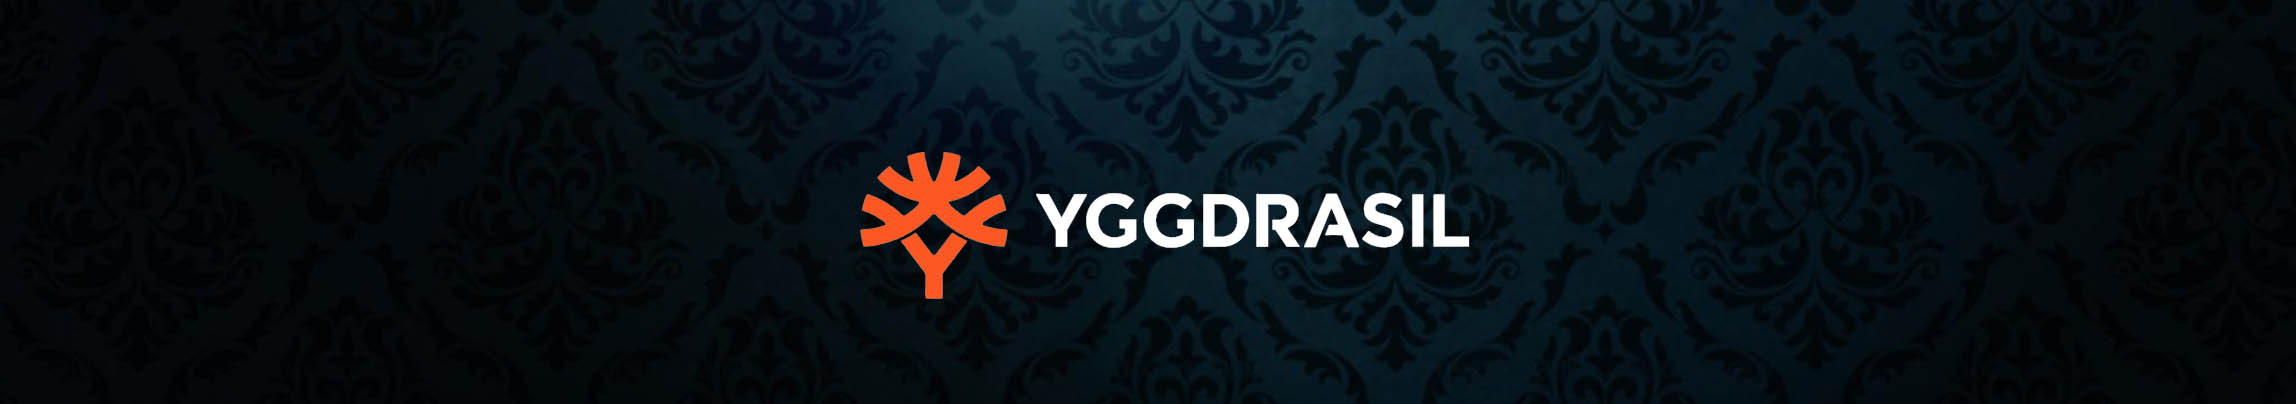 yggdrasil logo